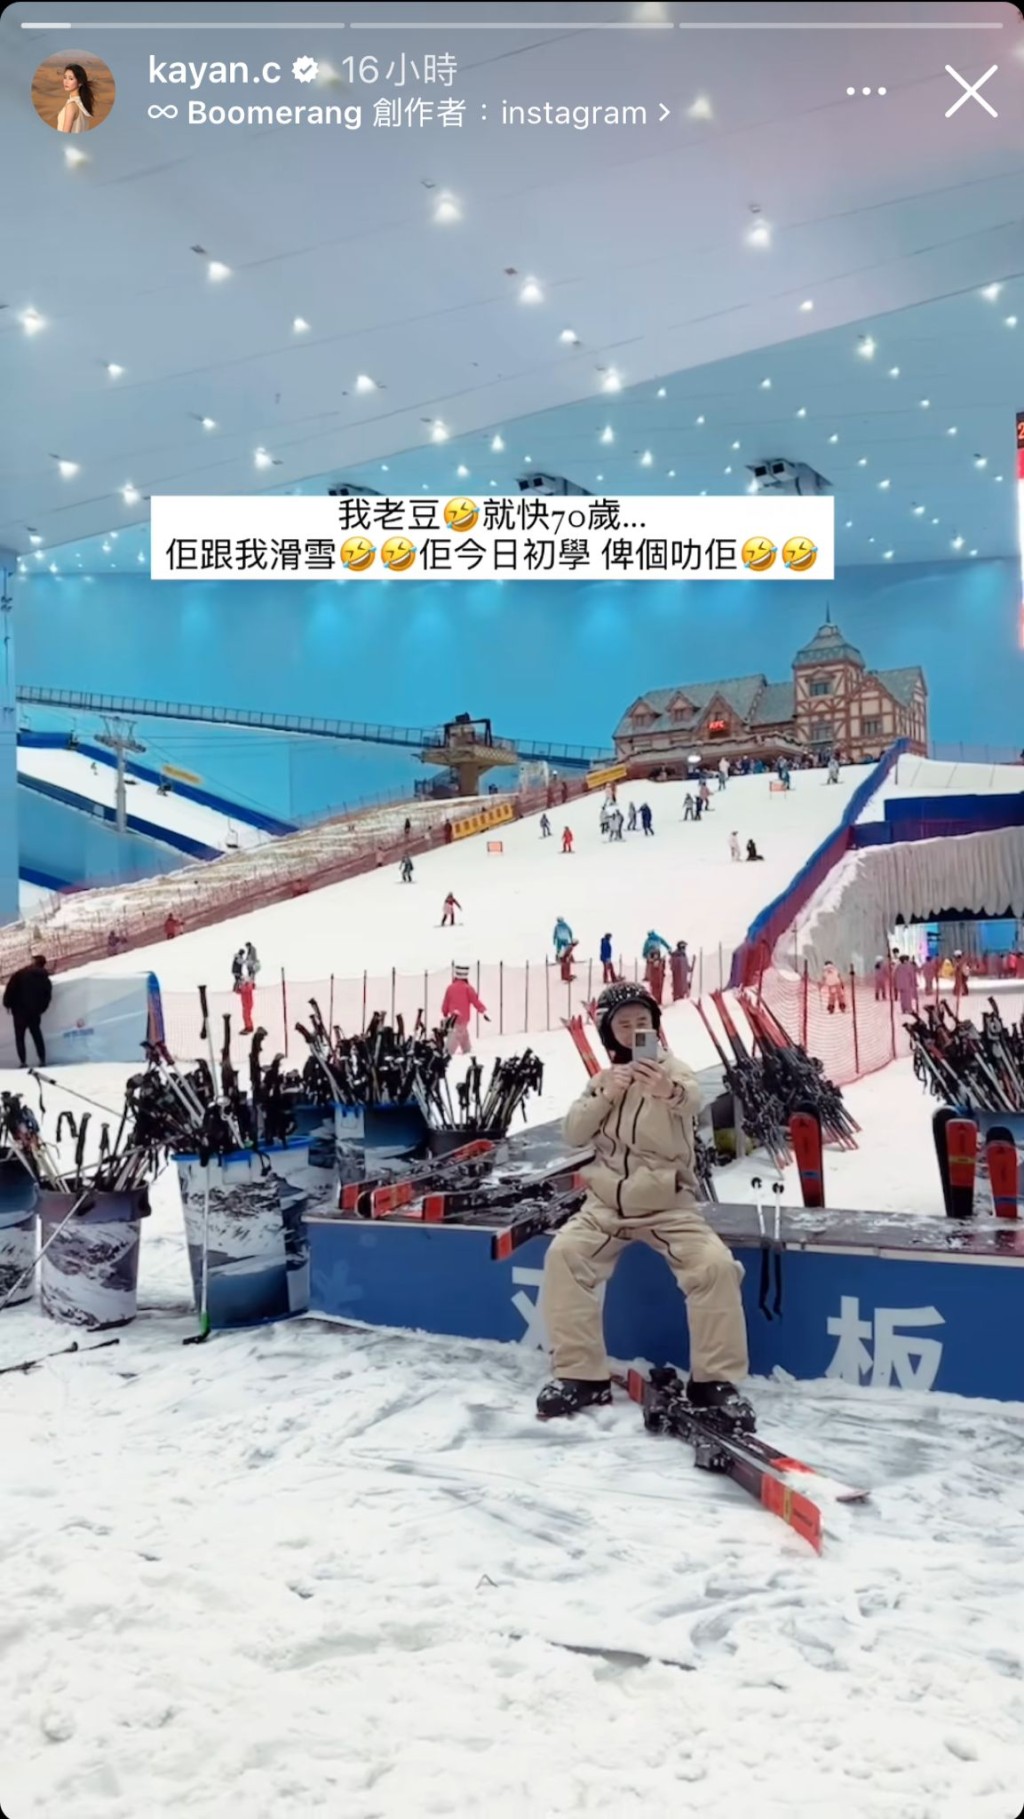 蔡嘉欣贴出偷影爸爸雪场自拍的照片，她大赞：「我老窦就快70岁…佢跟我滑雪，佢今日初学，畀个叻佢。」